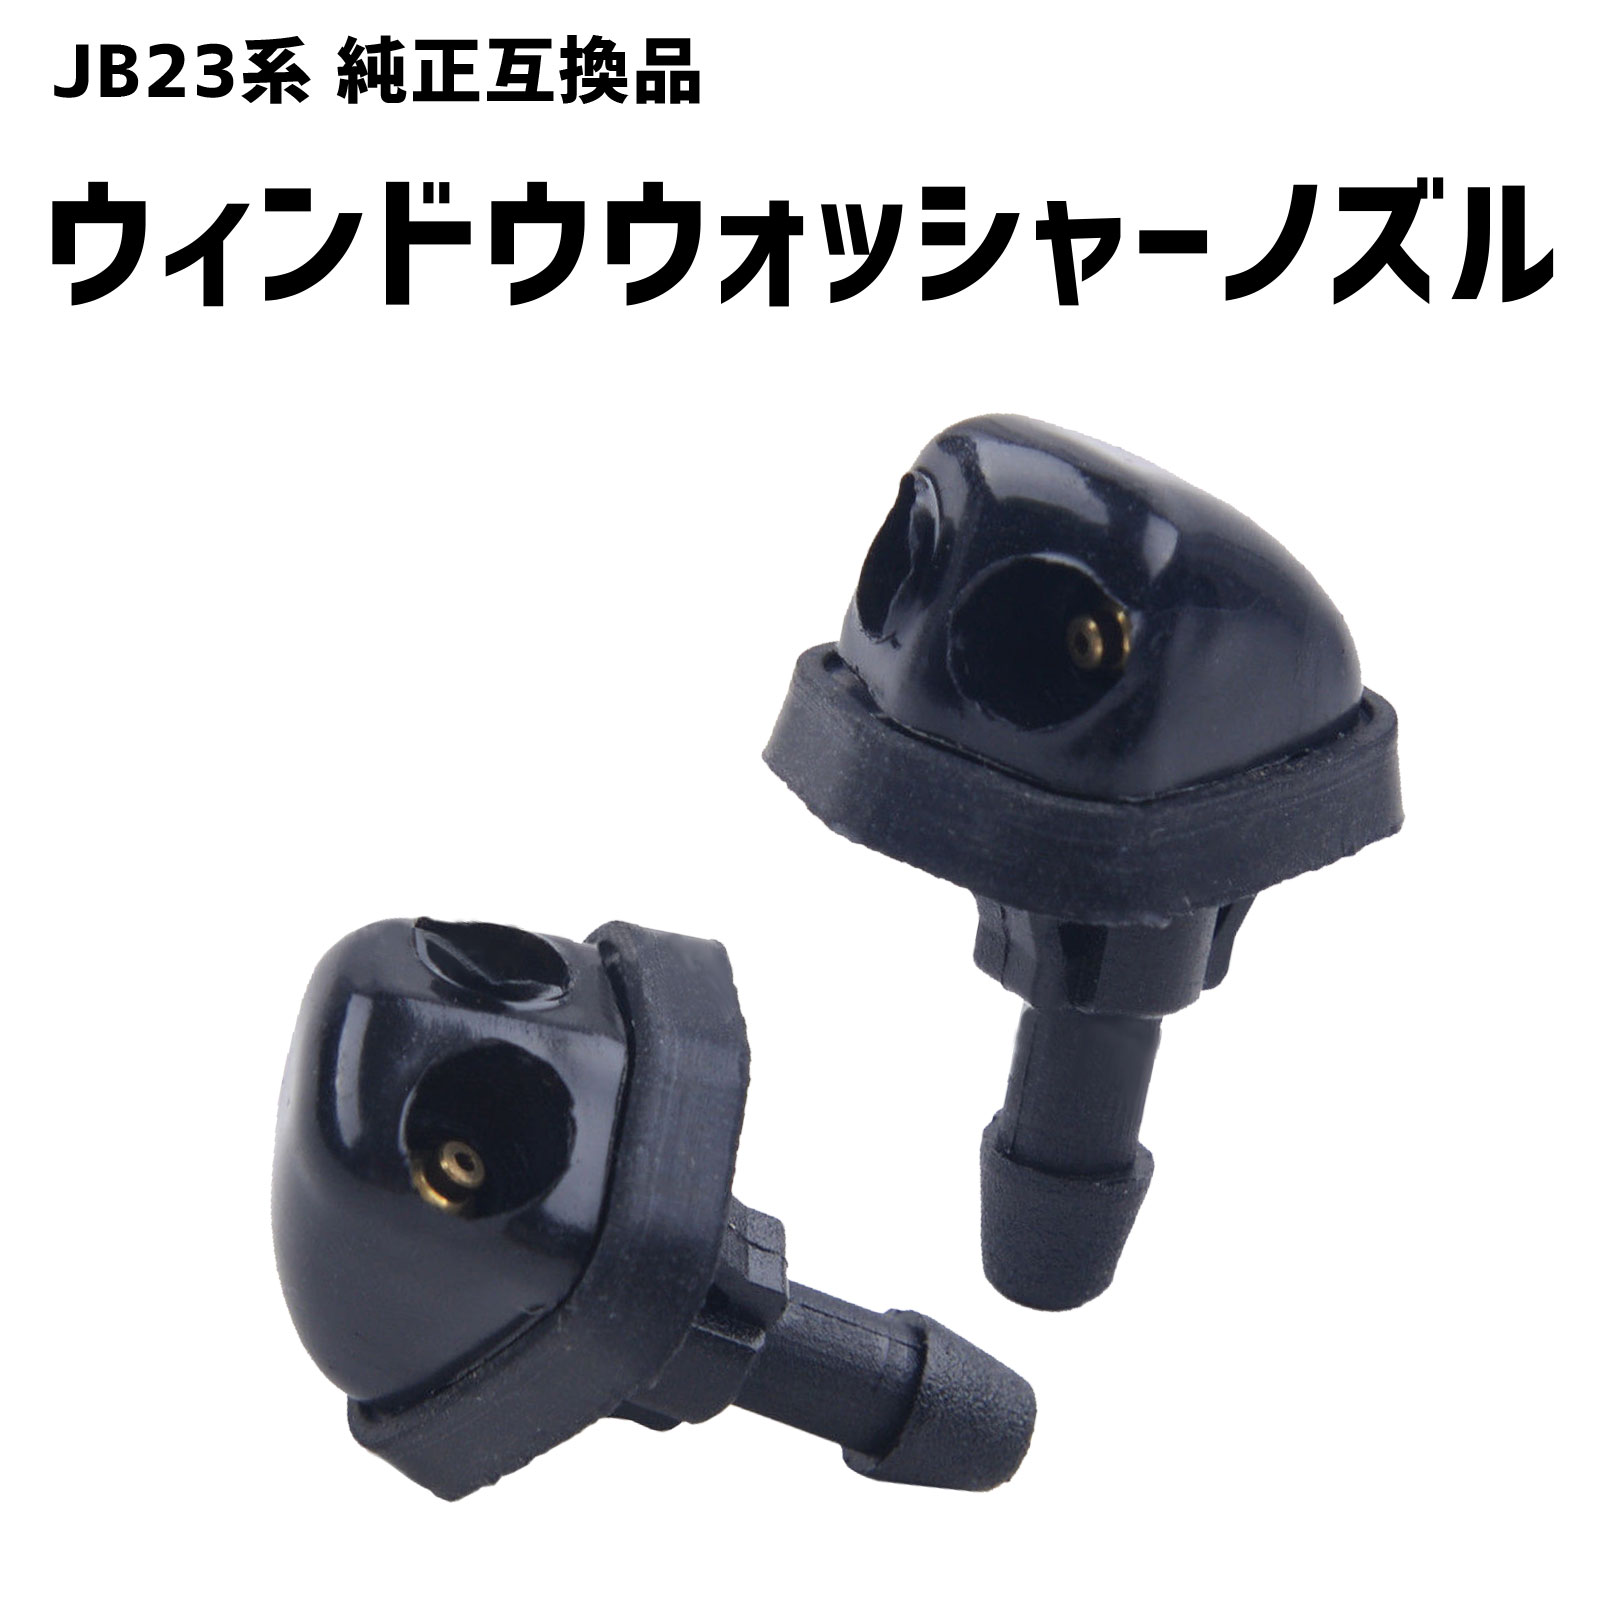 ウォッシャーノズル JB23 ジムニー 2穴 2個セット SUZUKI 互換品 SN-228-N1